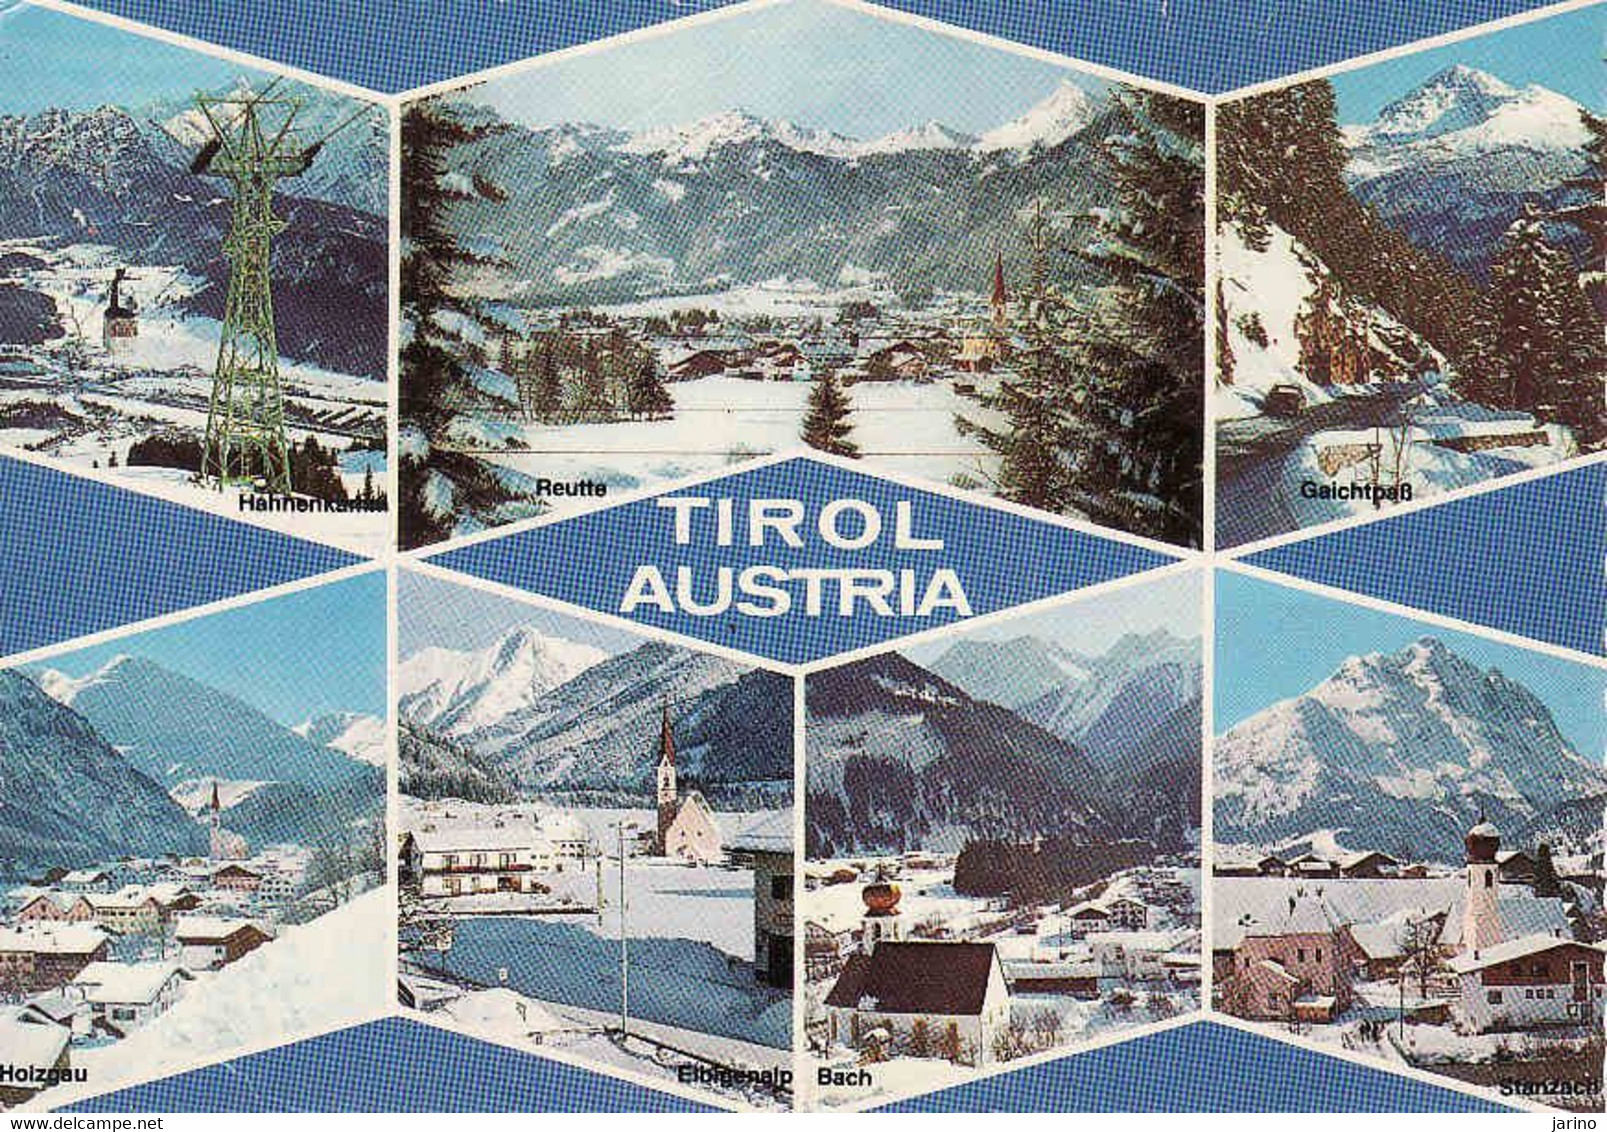 Austria, Tirol, Elbigenalp, Bach, Stanzach, Gaichtpass, Hahnenkamm, Holzgau,... Used 1981 - Galtür